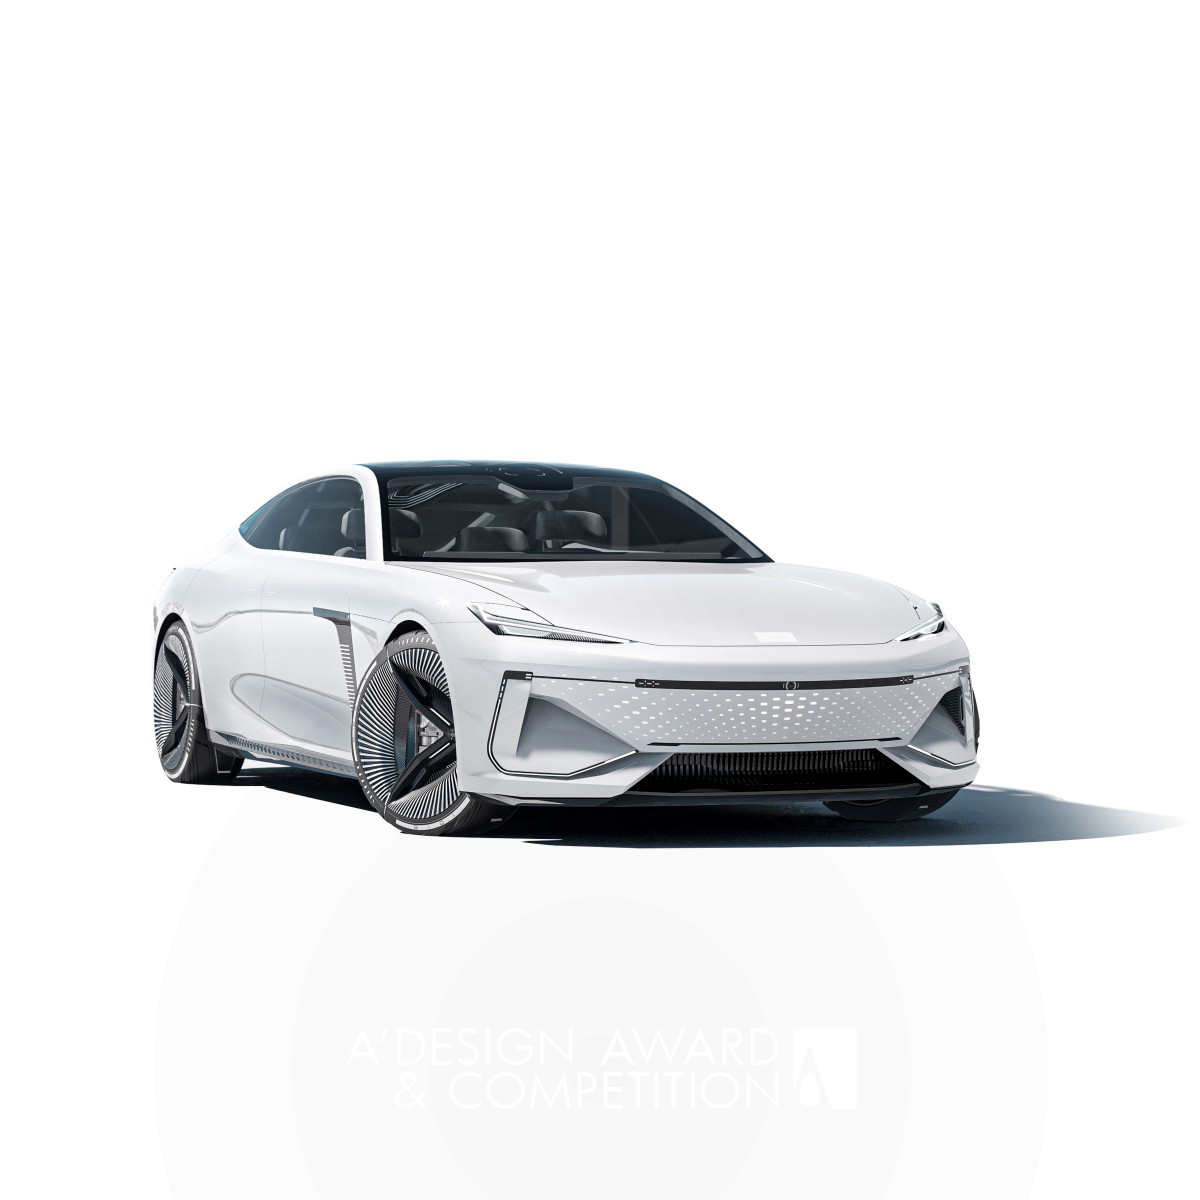  Concept Car